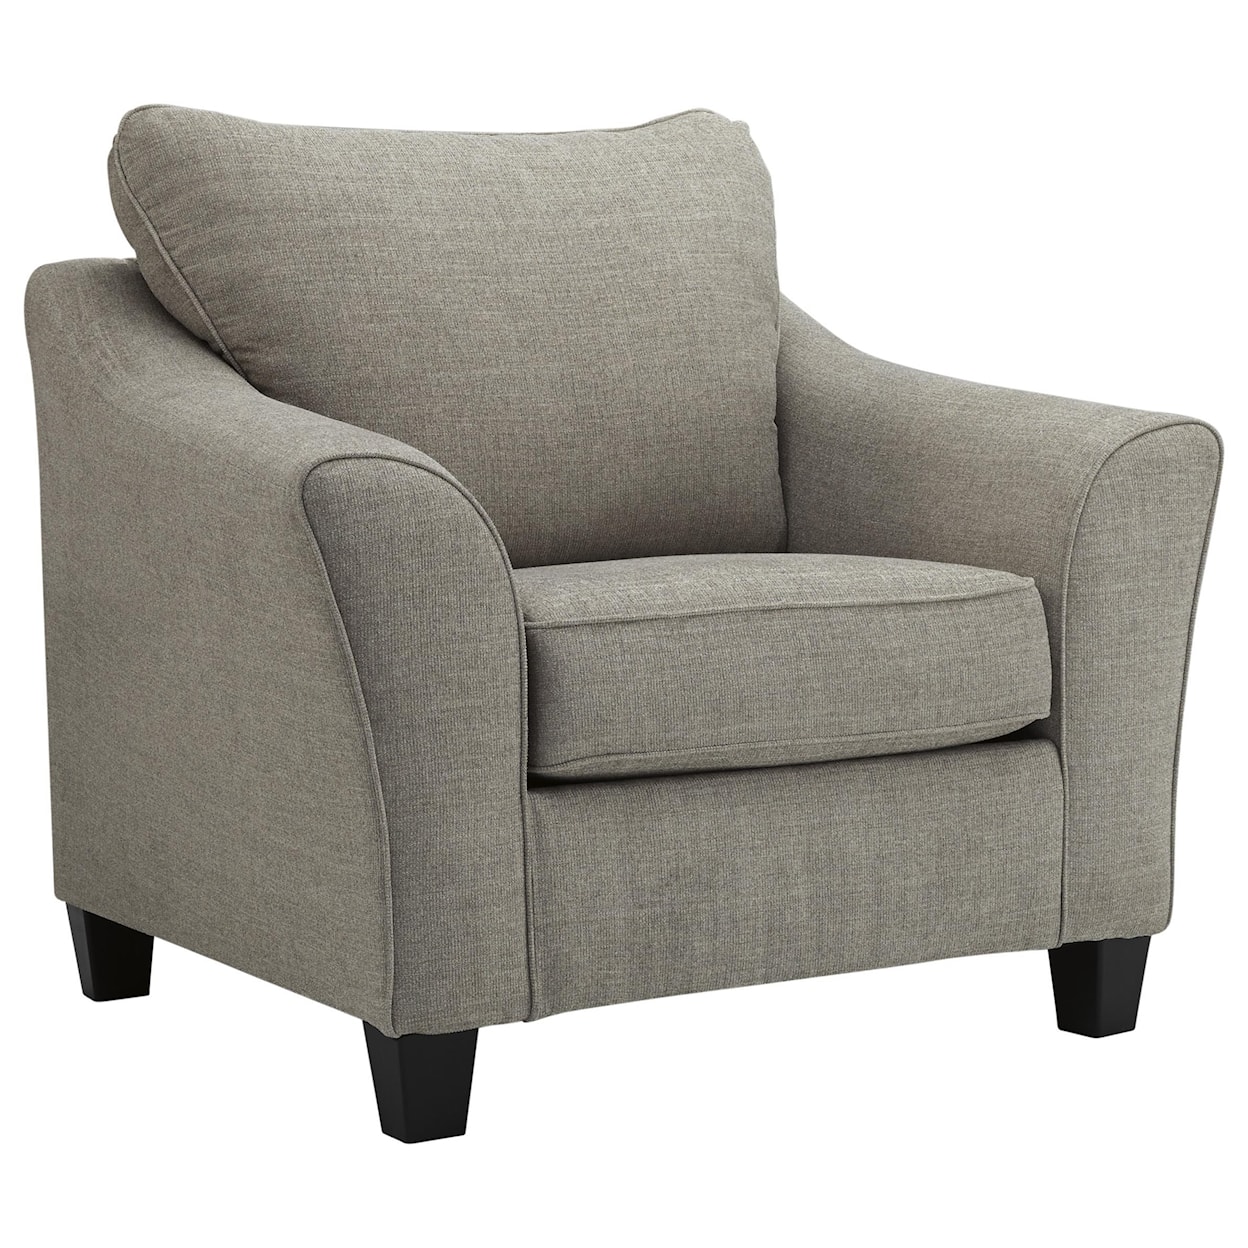 Ashley Furniture Kestrel Chair